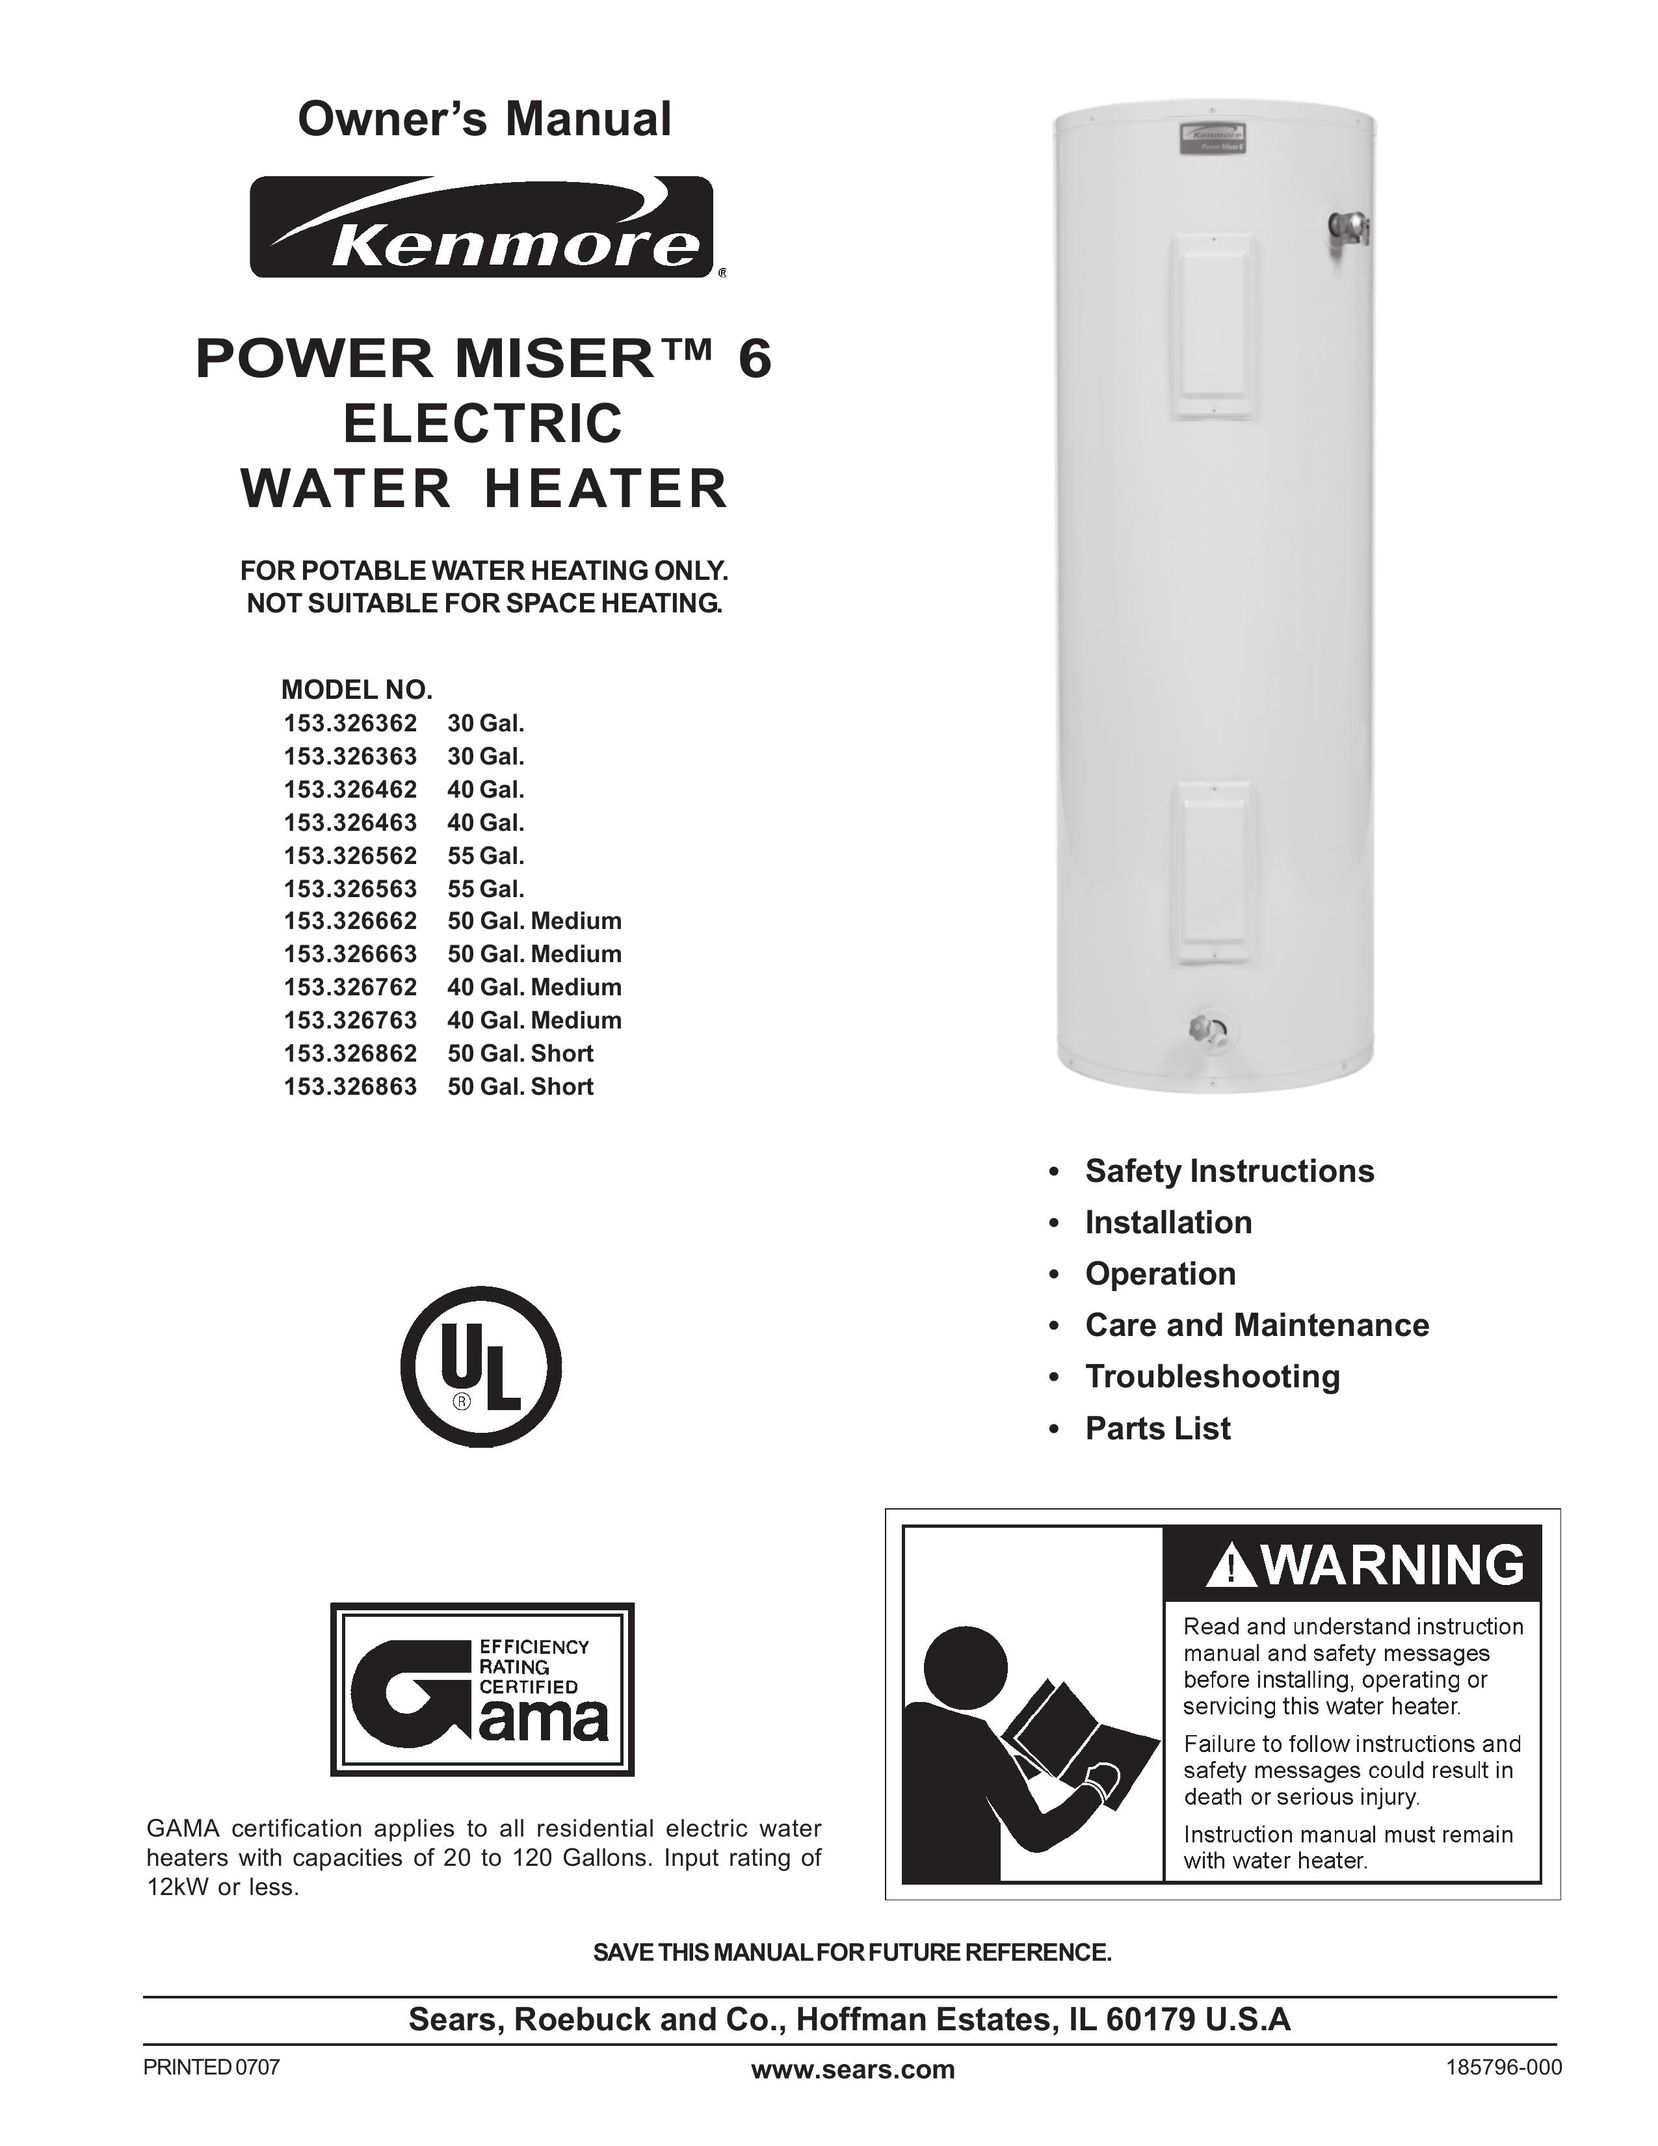 Sears 153.326563 55 GAL. Water Heater User Manual